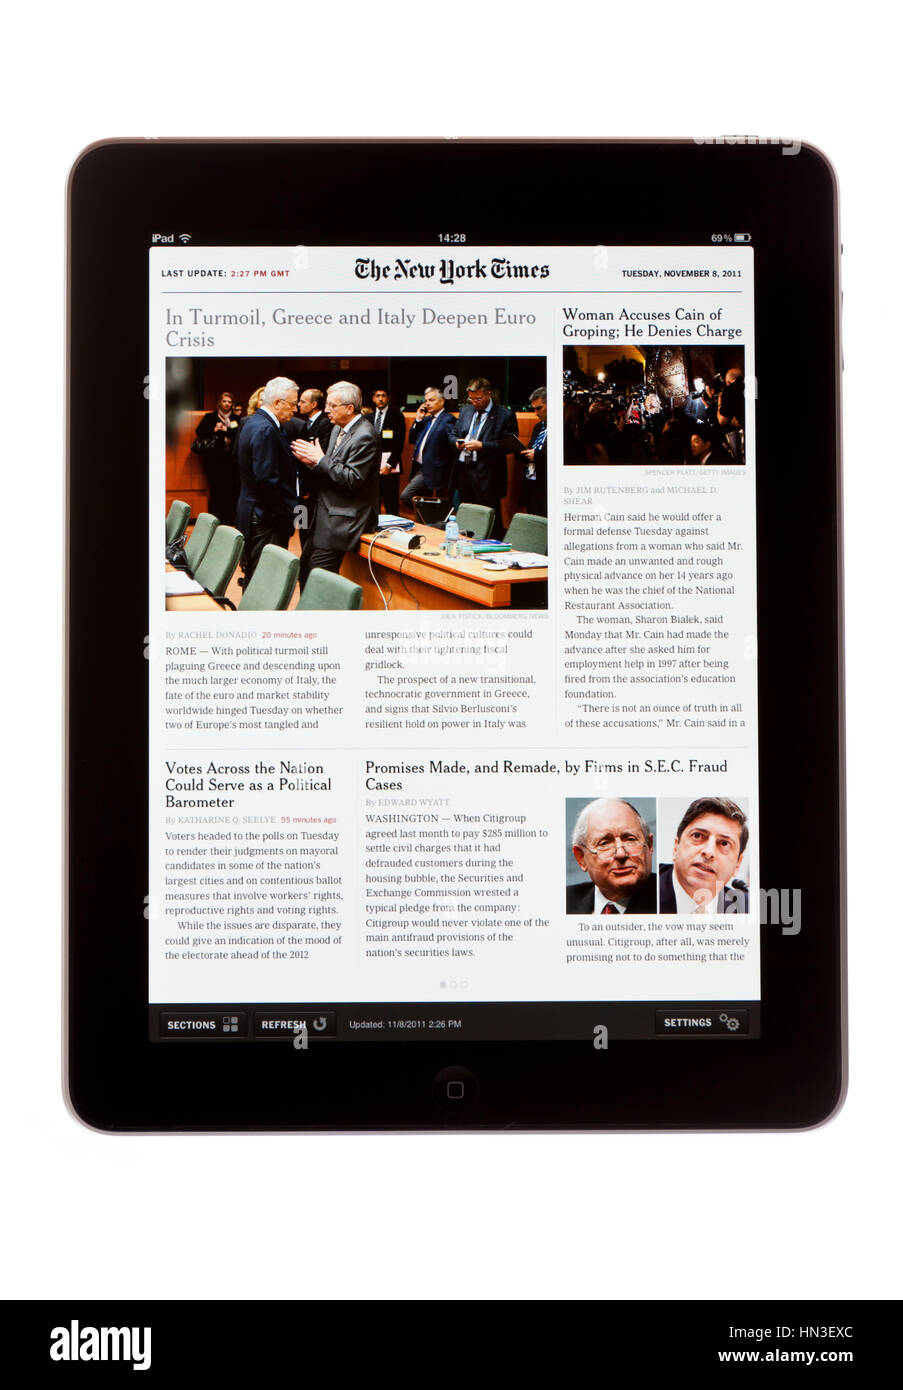 BATH, Großbritannien - 8. November 2011: An Apple iPad iPad-Ausgabe von The New York Times Zeitung vor einem weißen Hintergrund angezeigt. Die Zeitung kann b Stockfoto